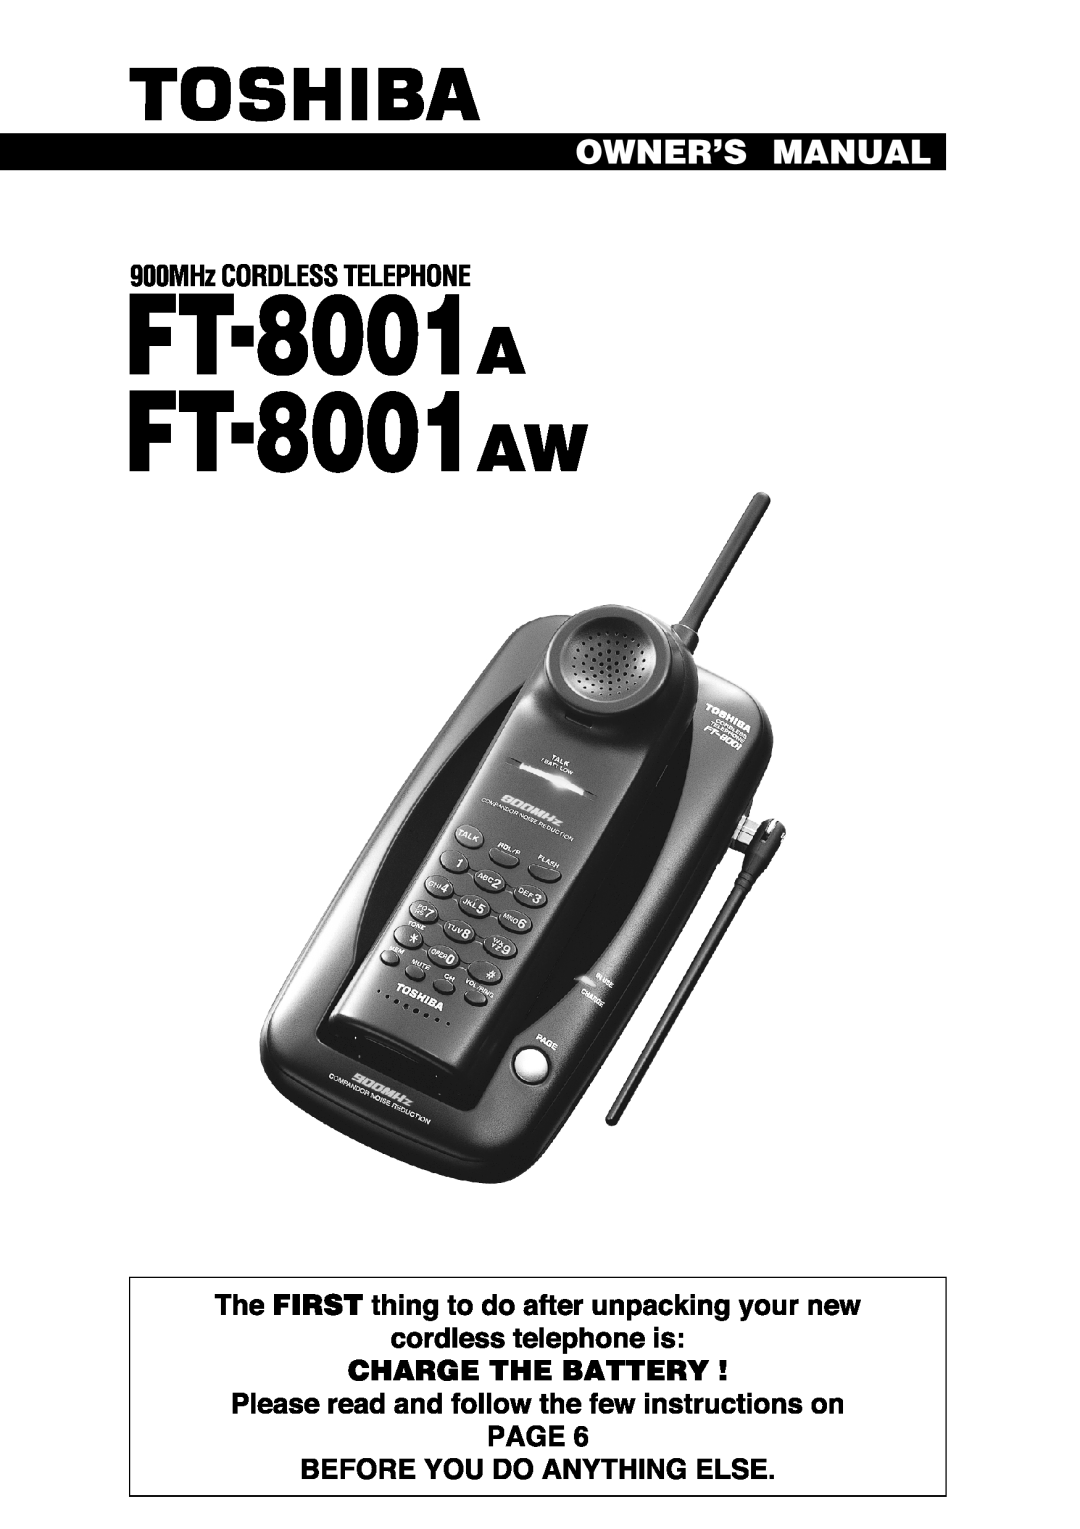 Toshiba FT-8001 AW manual 